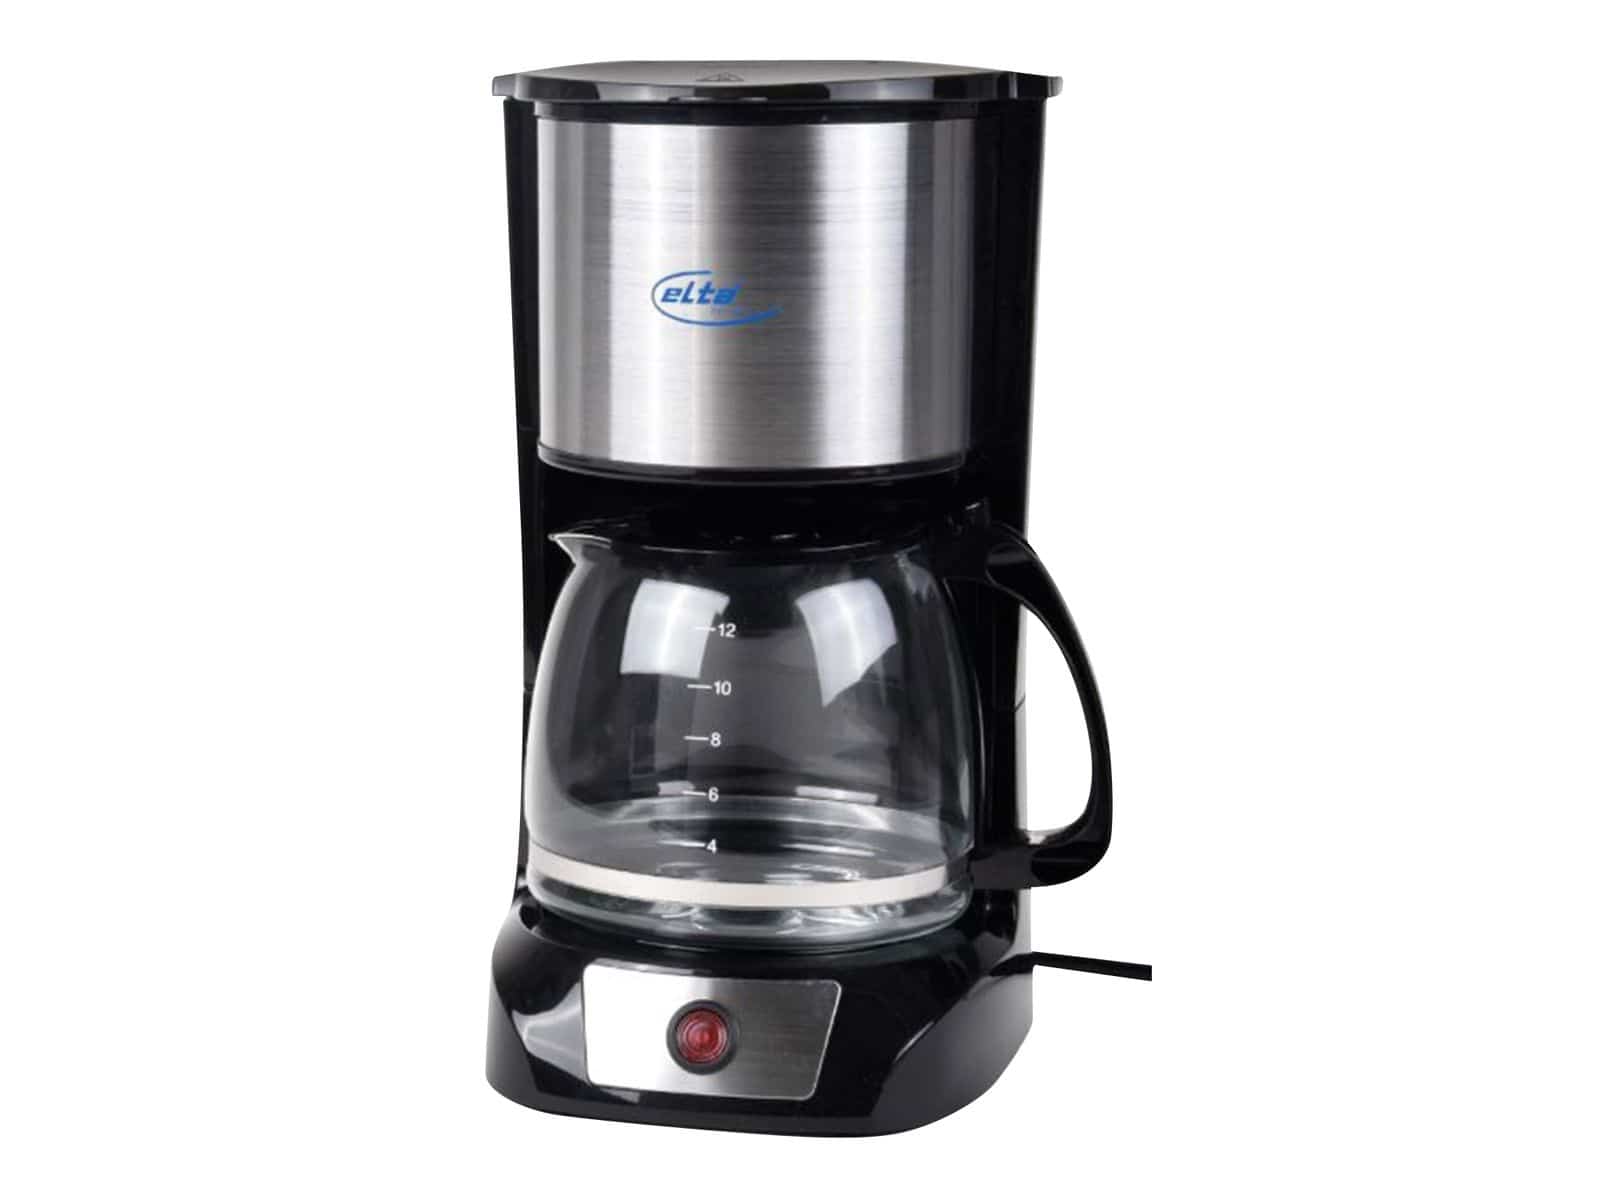 ELTA Kaffeemaschine KME-1000.2, 1,5 L, 800 W, edelstahl von Elta